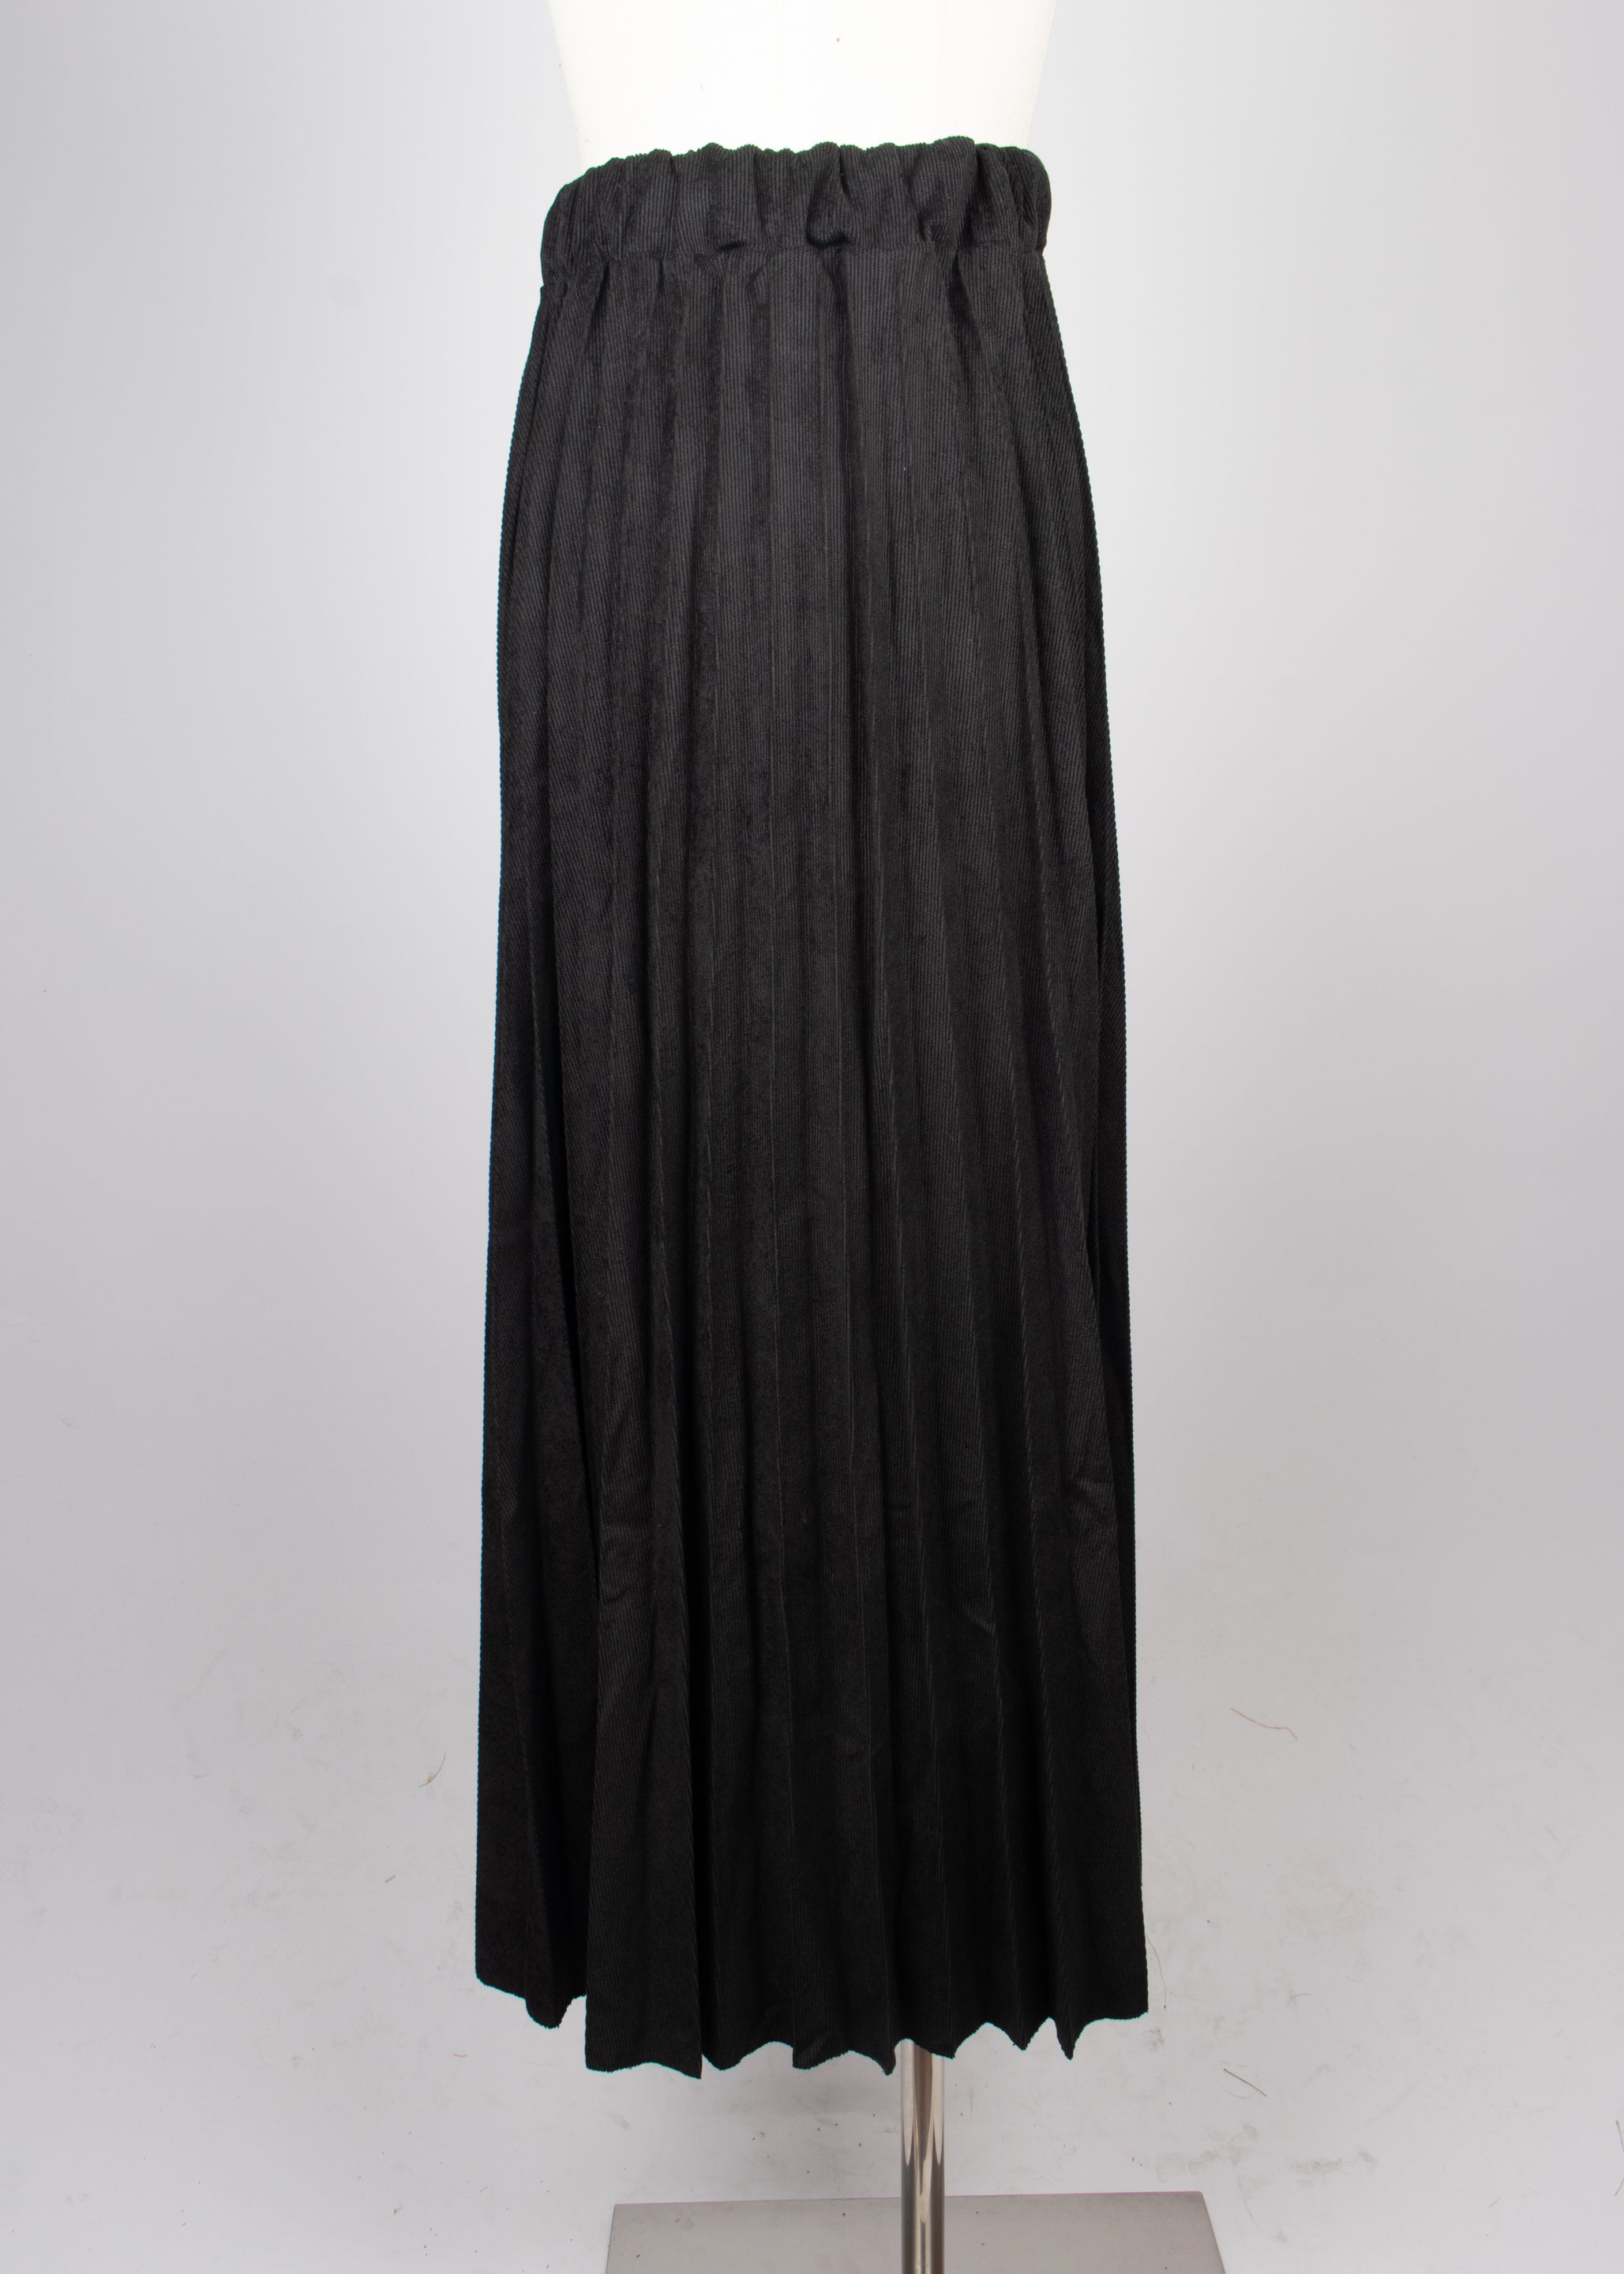 Falda tablones pana negro